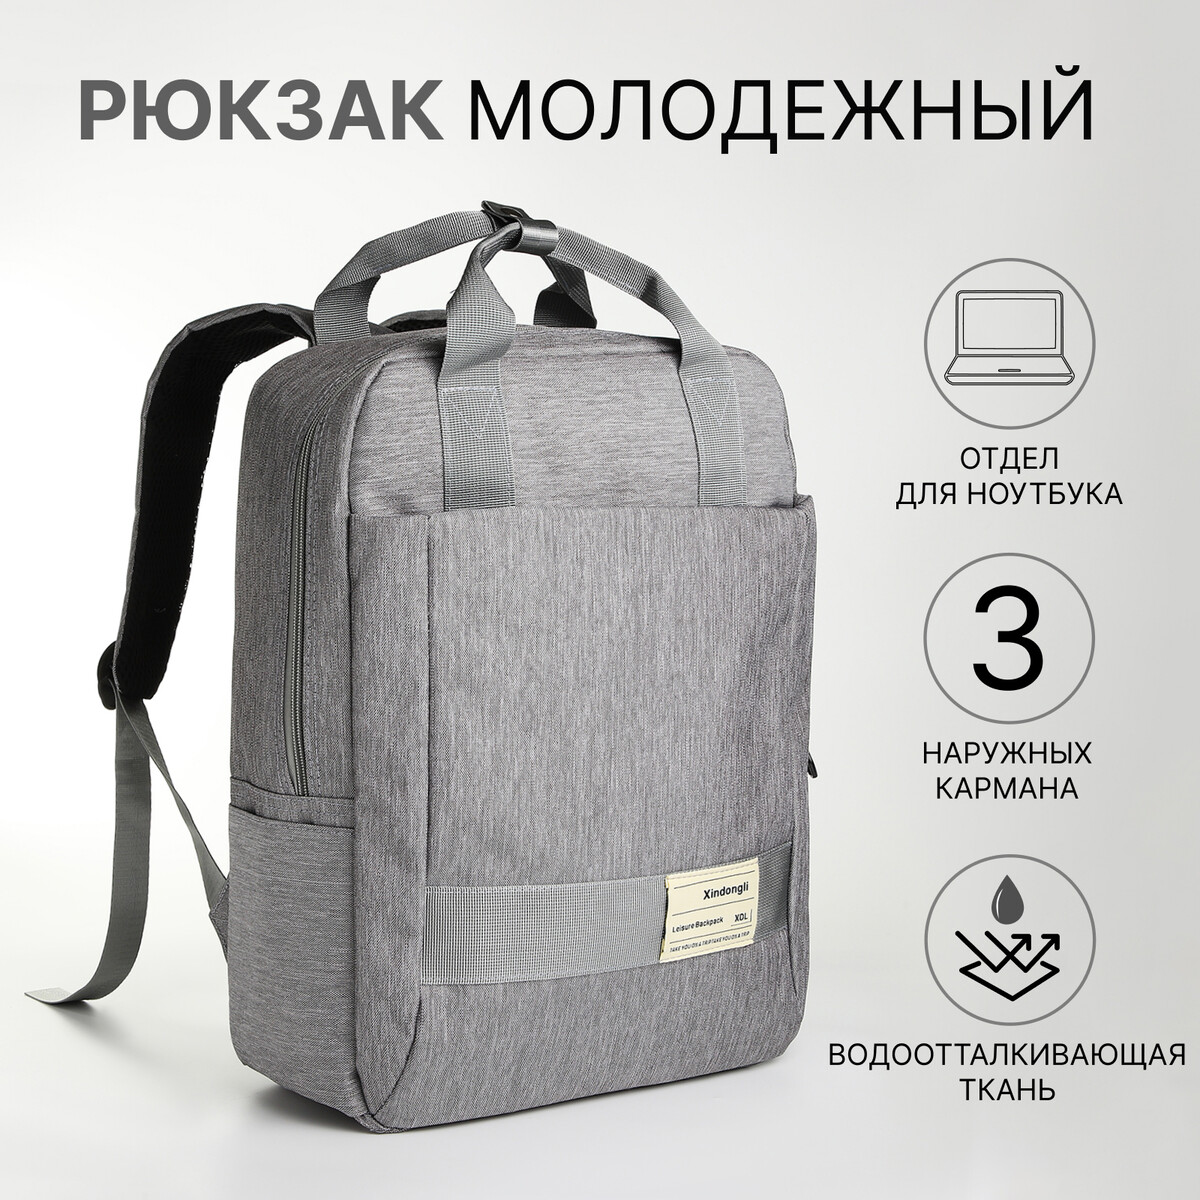 Рюкзак-сумка из текстиля на молнии, 3 кармана, отдел для ноутбука, цвет серый рюкзак торба dark cat 45х20х25 отдел на стяжке шнурком желтый